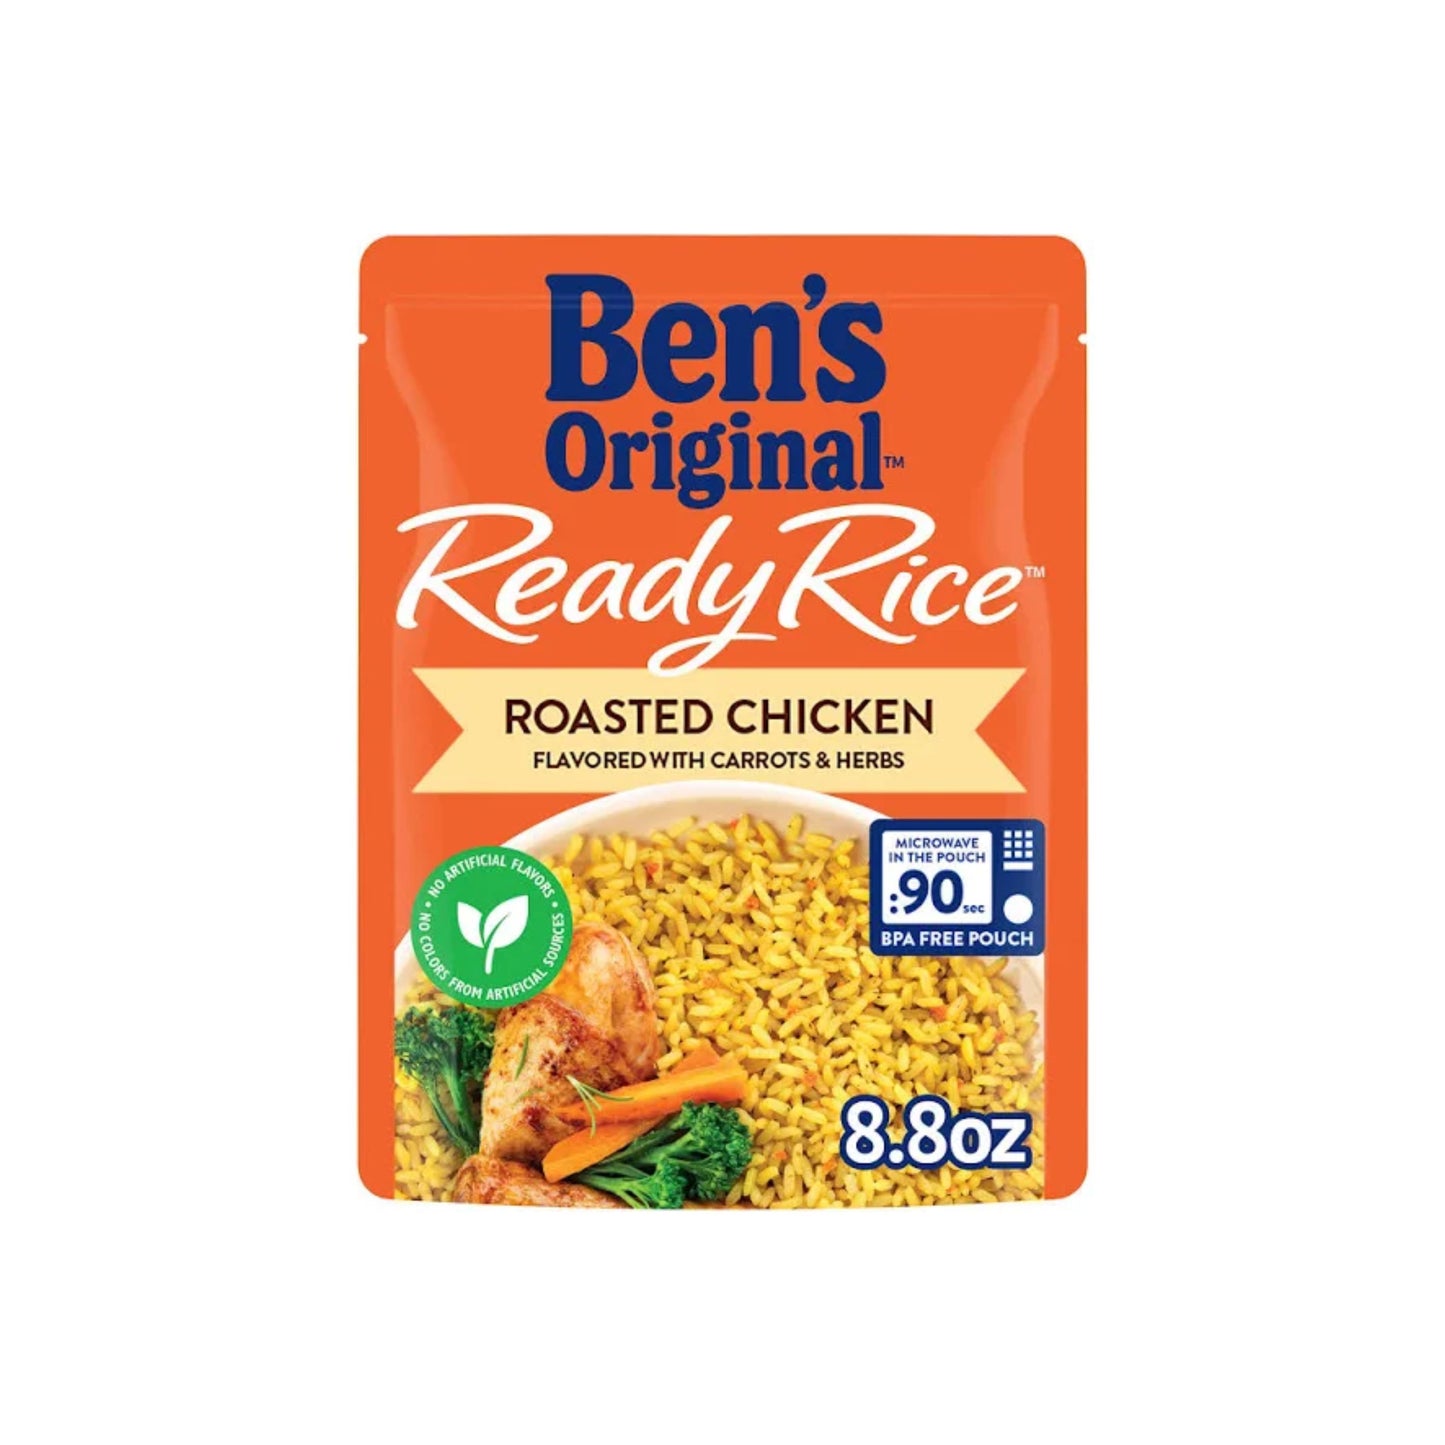 Ben's Original Ready Rice Roasted Chicken 8.8 OZ